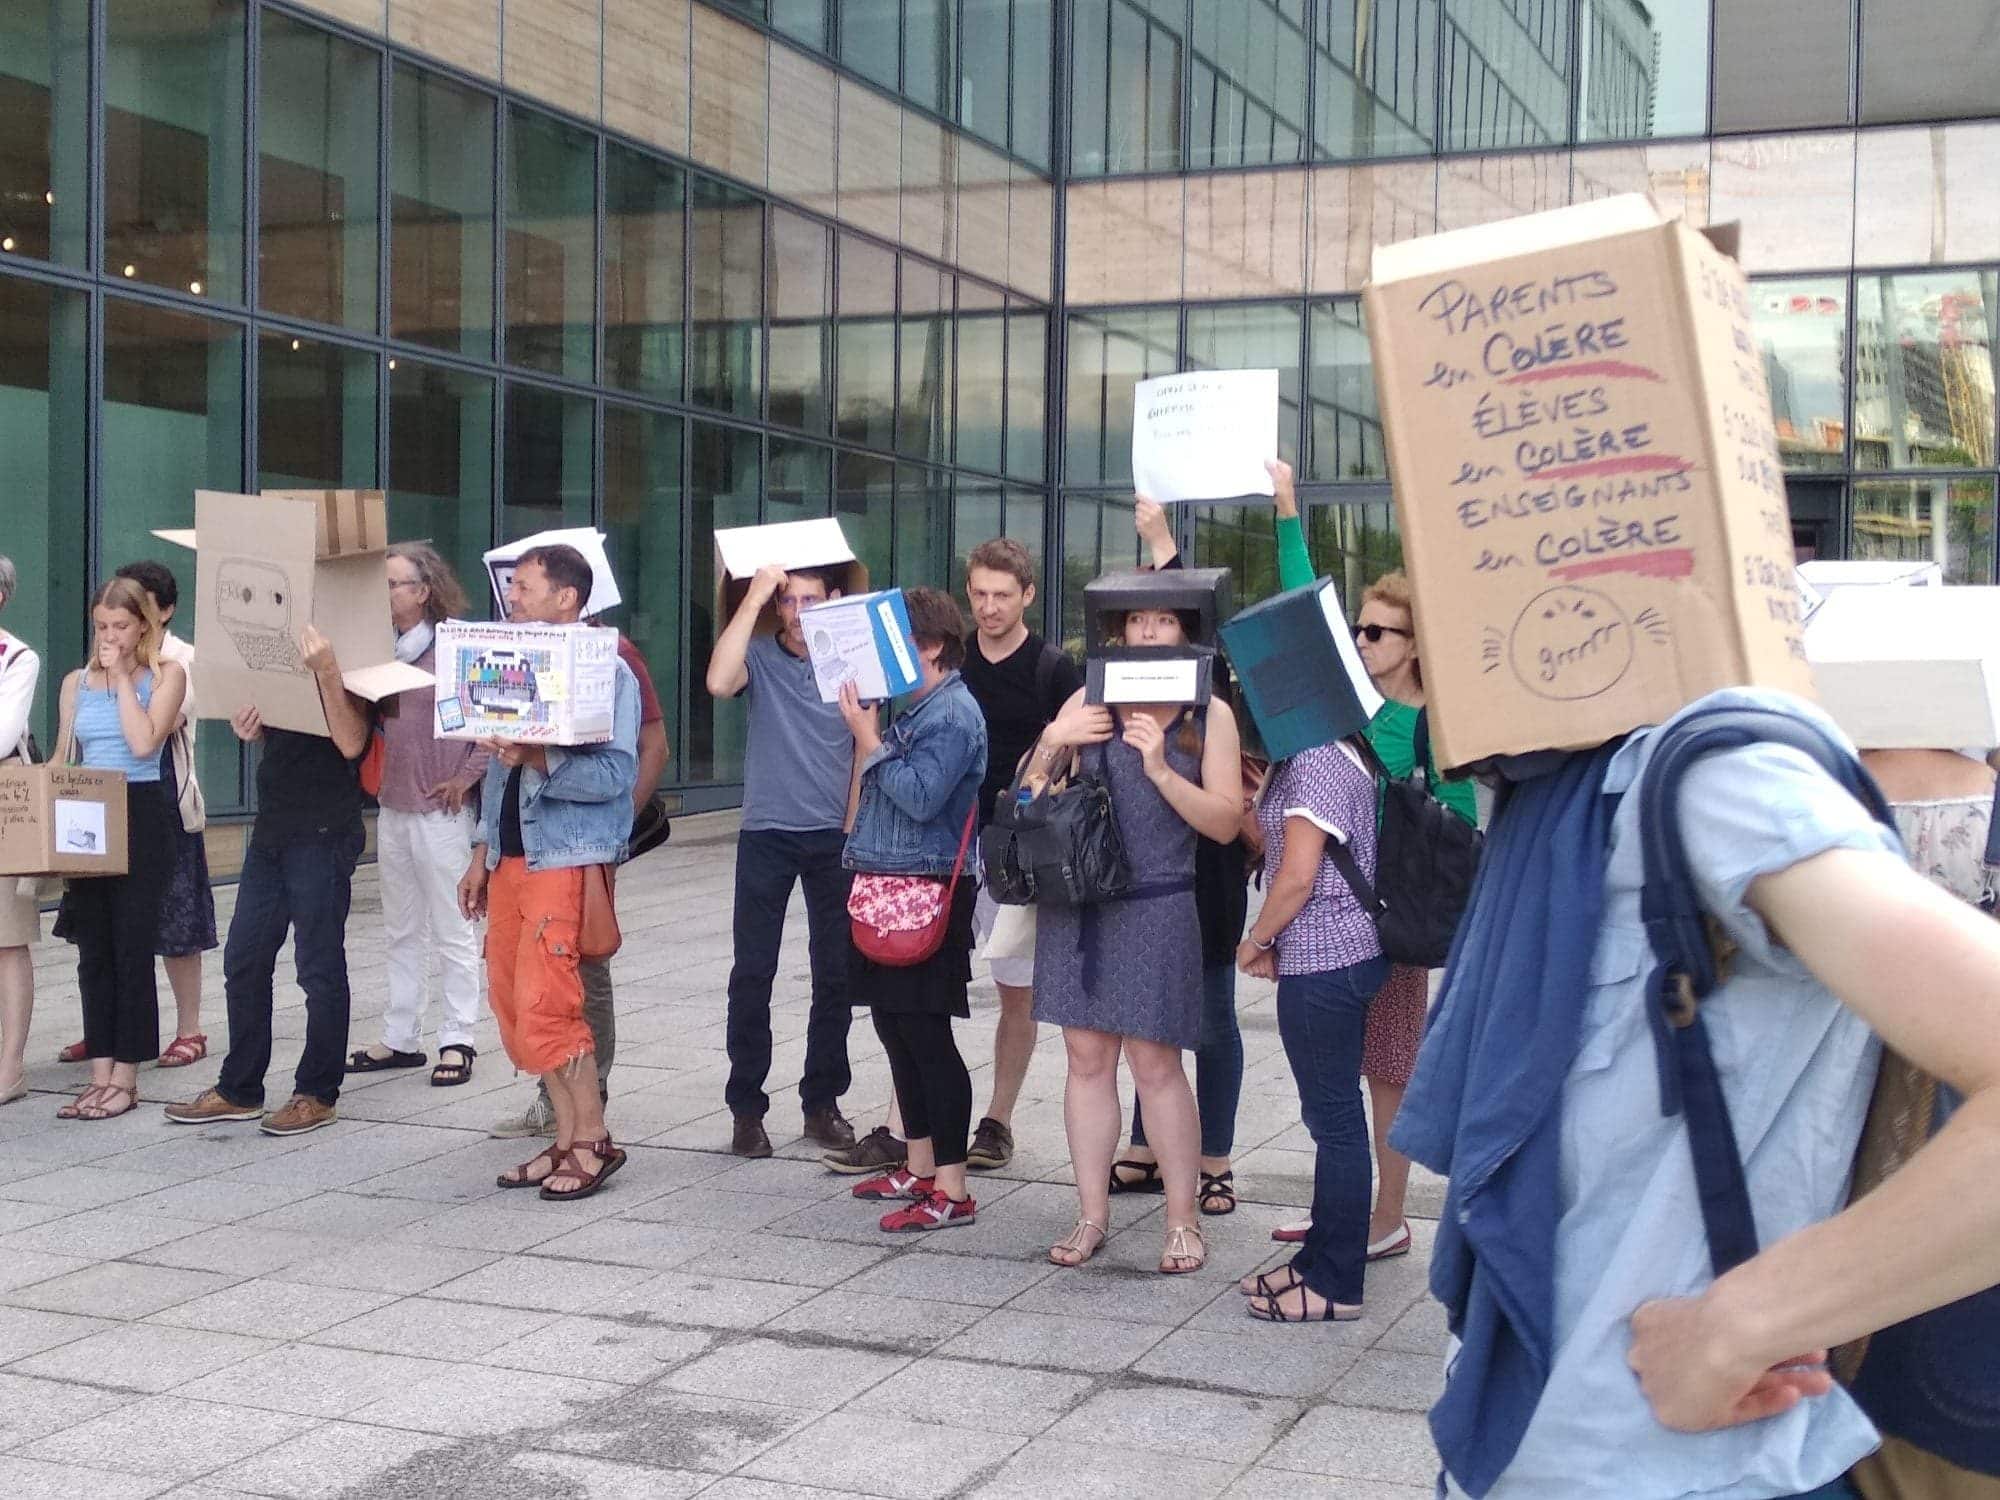 Des enseignants manifestent devant l'Hôtel de Région contre le numérique dans les lycées. (Photo LS / Rue89 Strasbourg / cc)